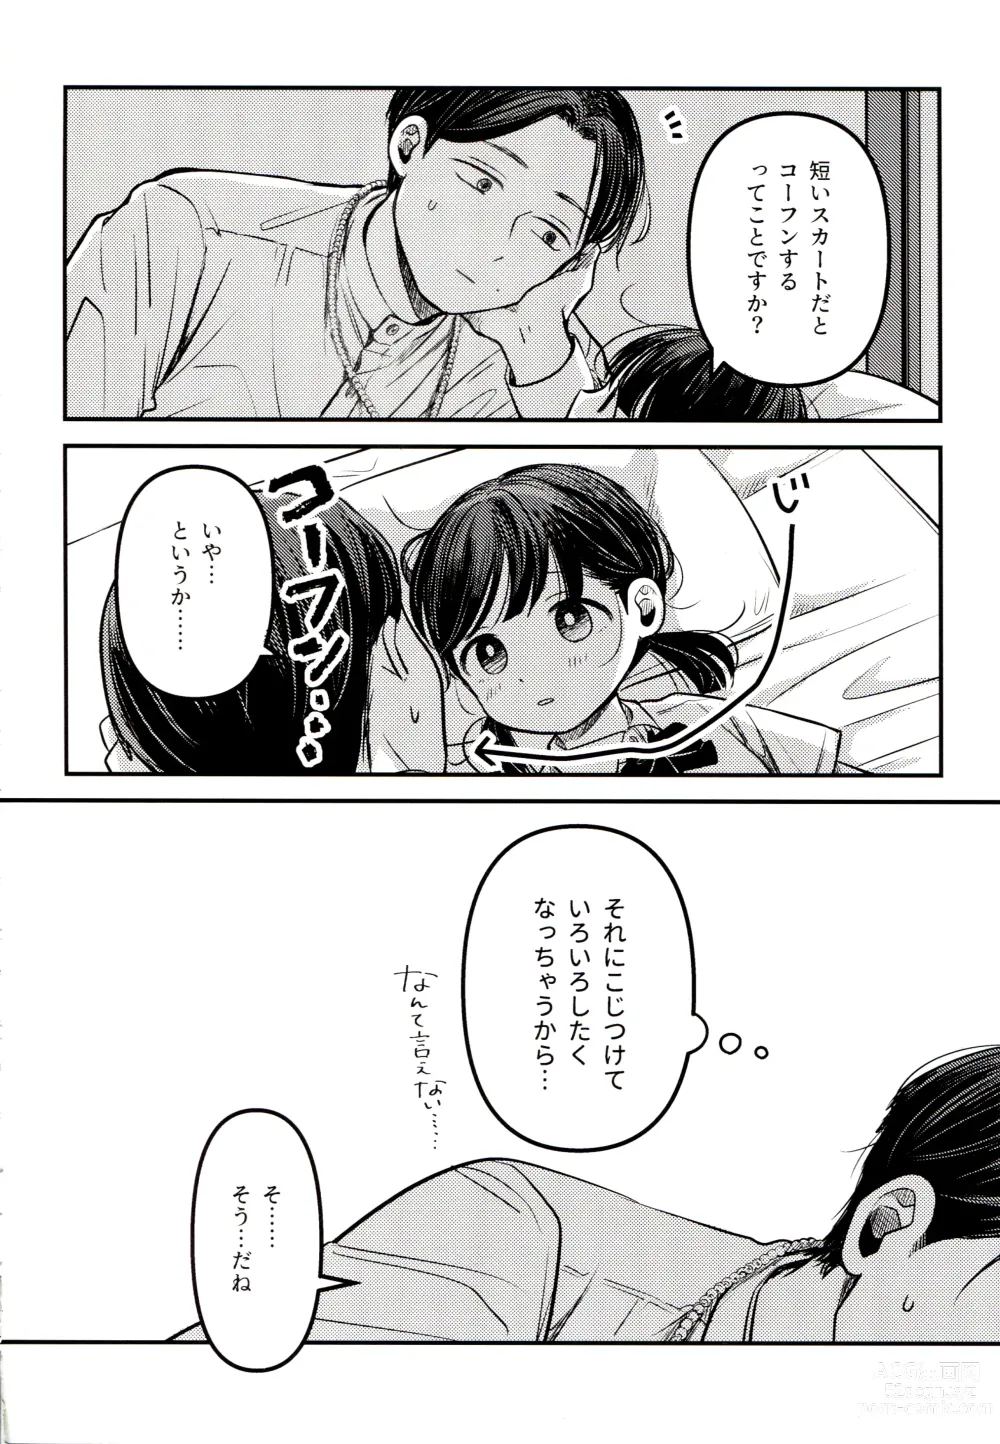 Page 54 of doujinshi Yuuwa